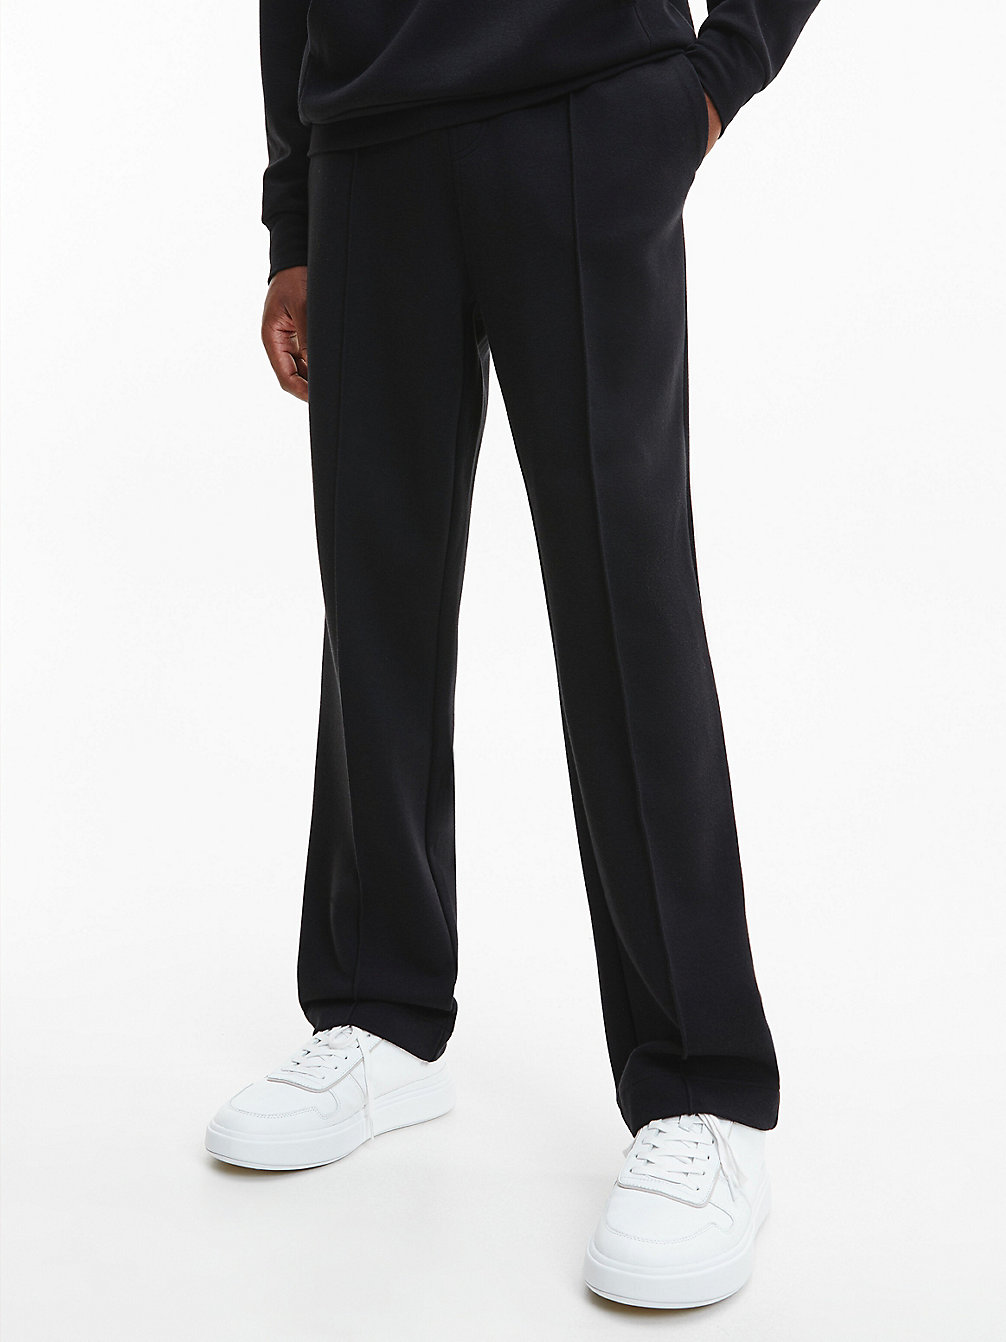 CK BLACK > Swobodne Spodnie Dresowe Z Szerokimi Nogawkami > undefined Mężczyźni - Calvin Klein